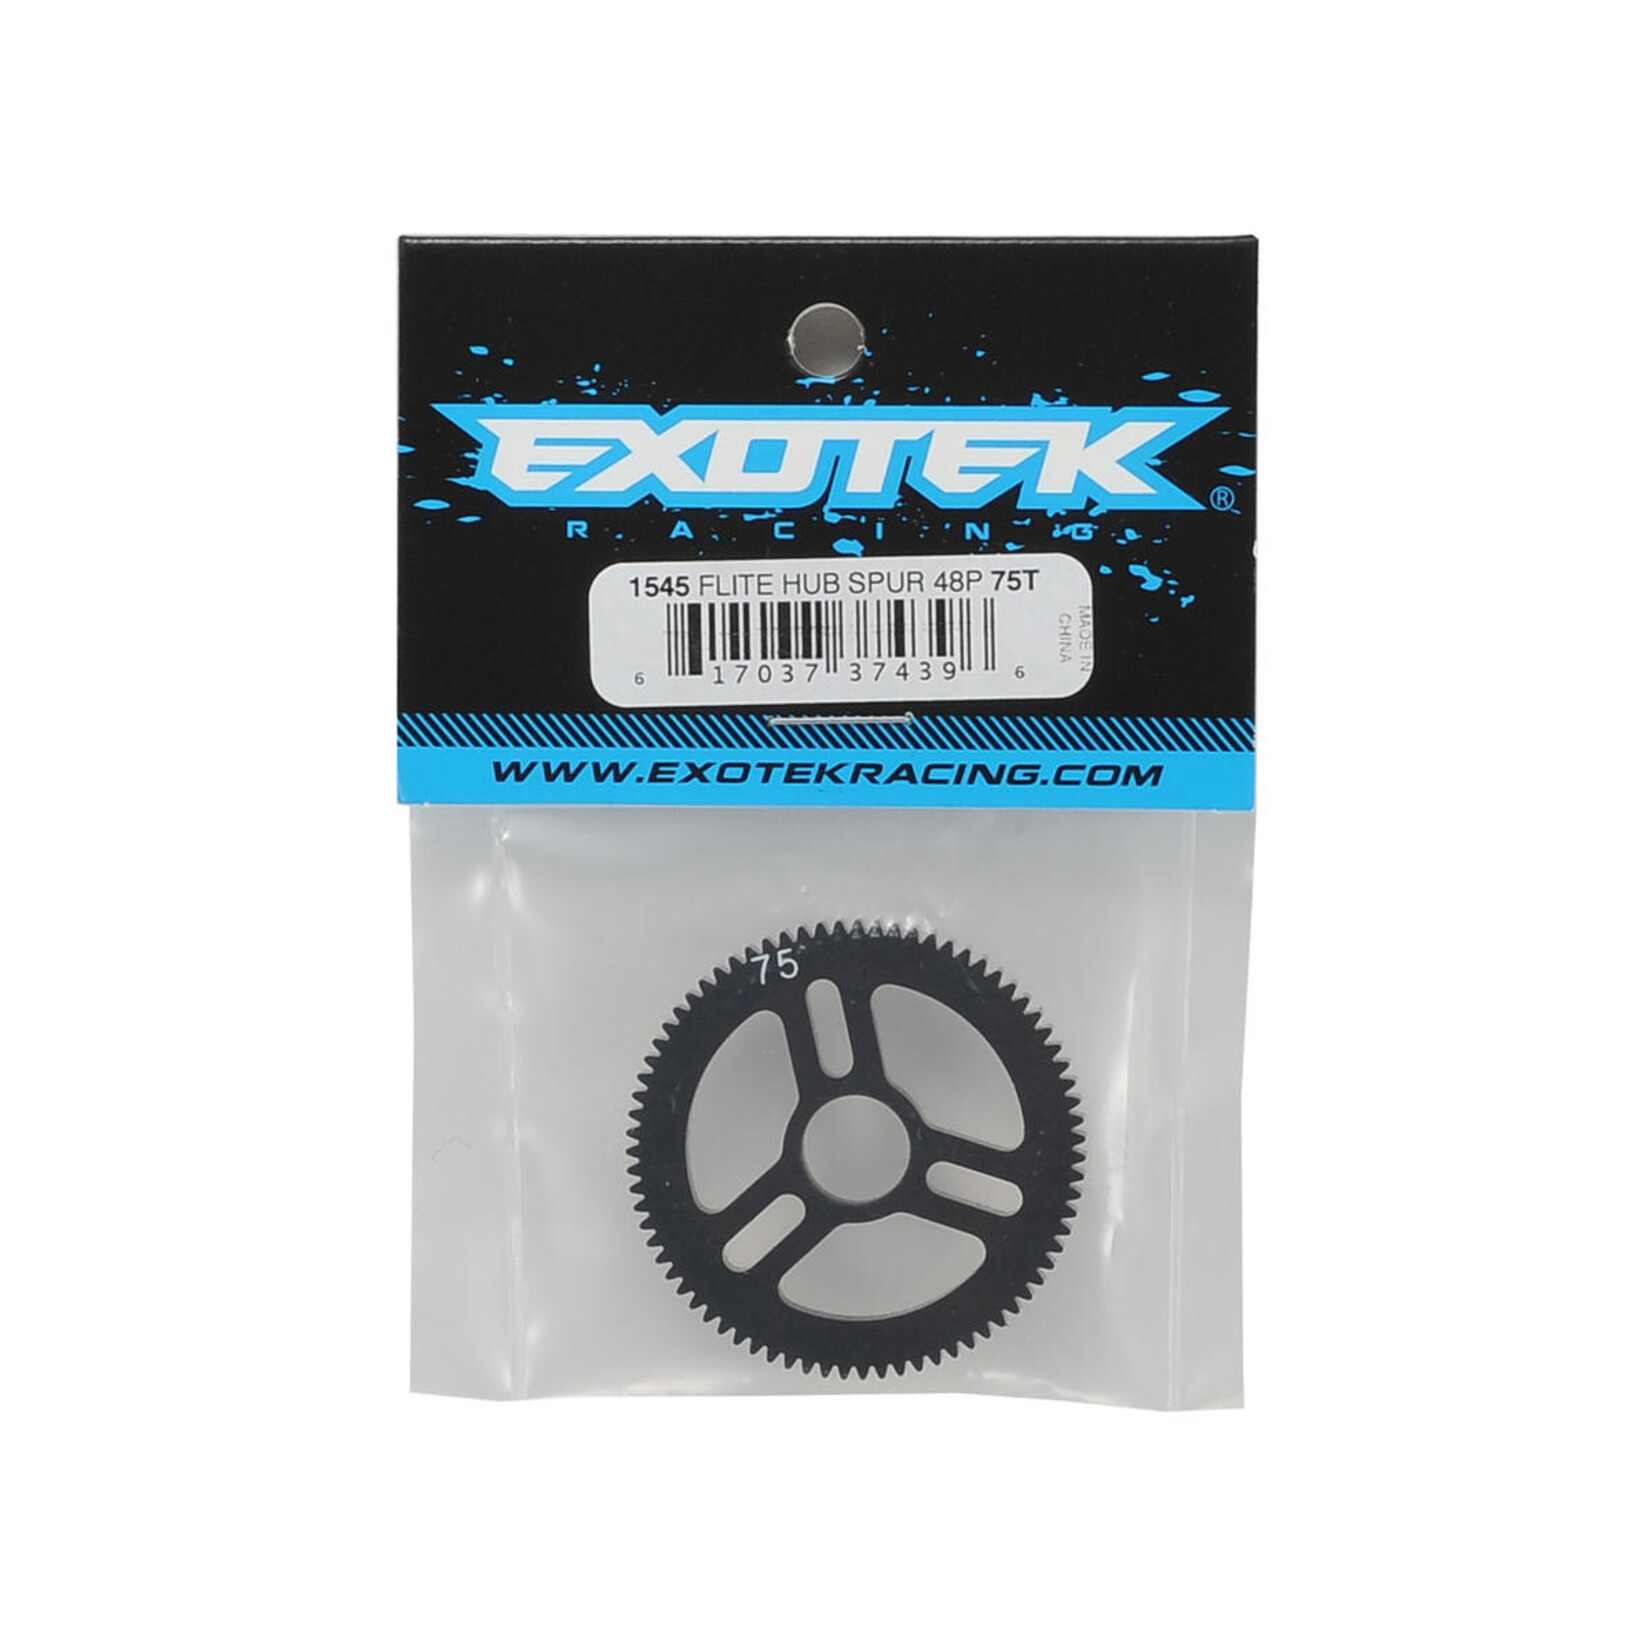 Exotek Exotek Flite 48P Machined Spur Gear (75T) #1545